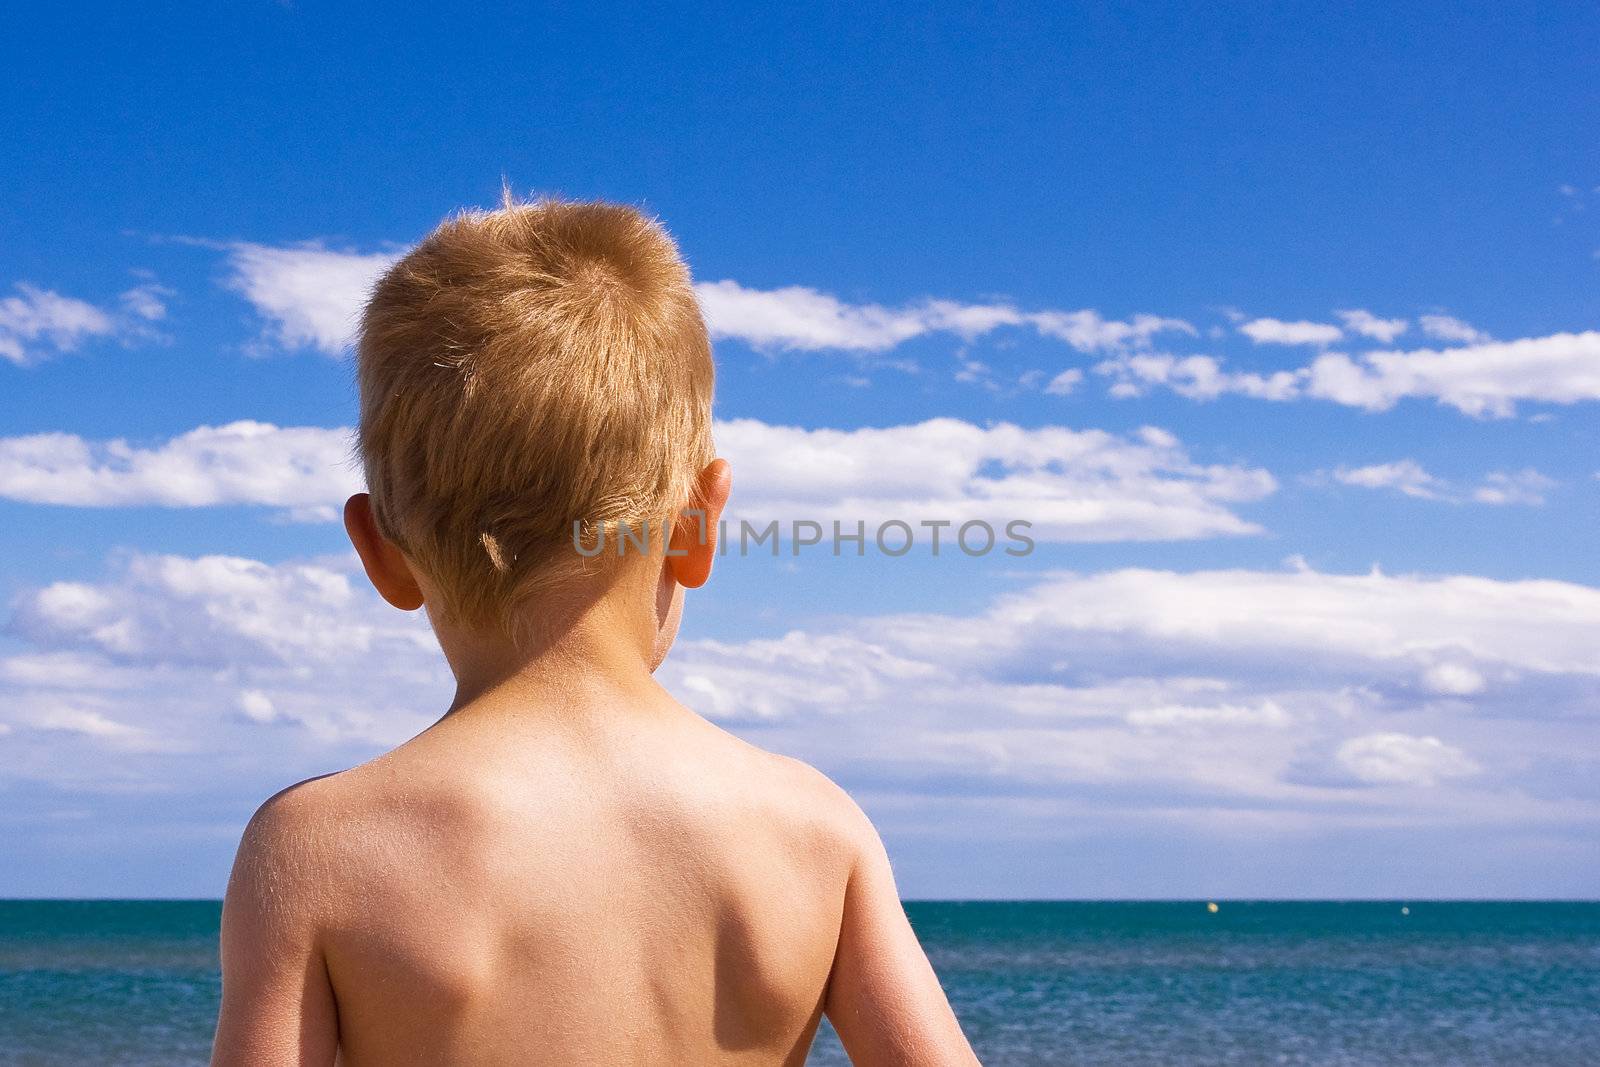 Child on a beach